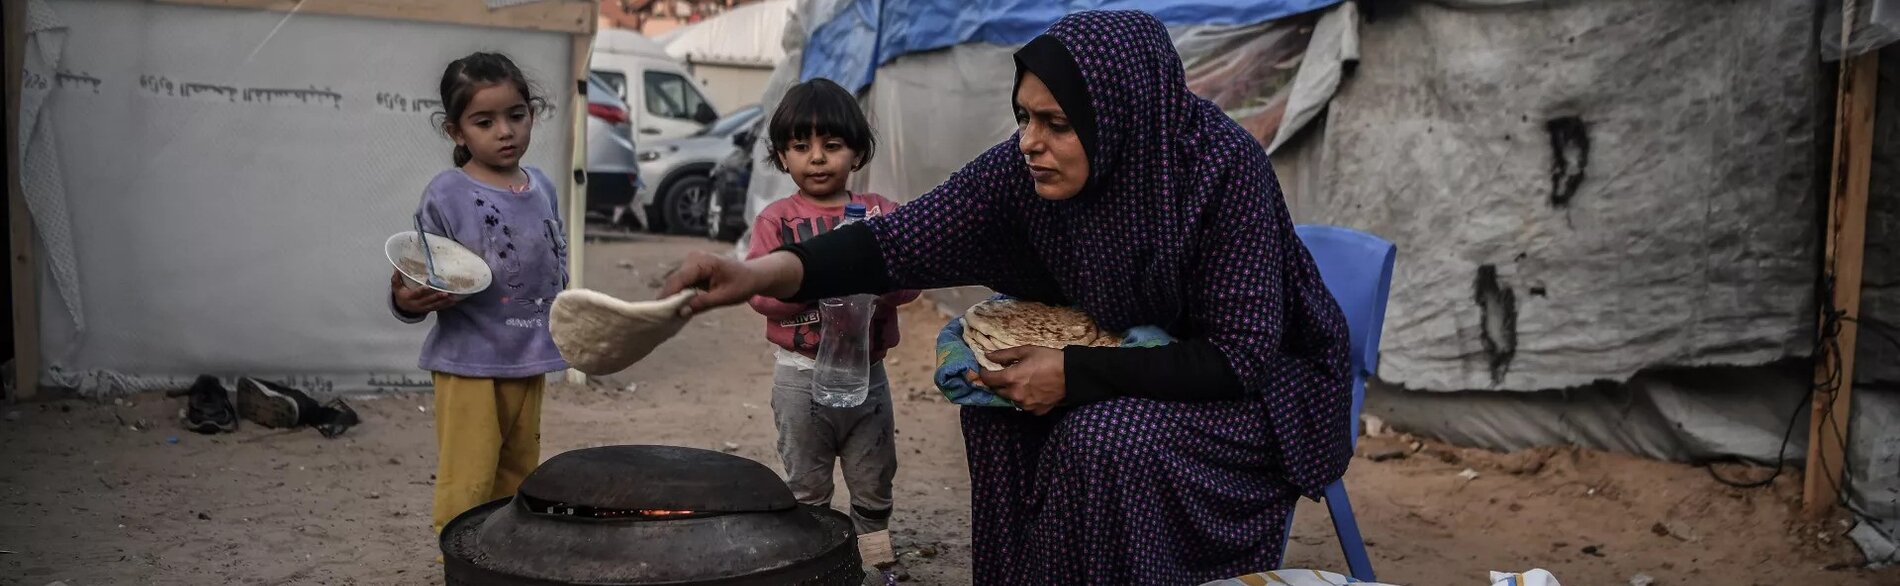 לדברי תוכנית המזון העולמית, כ-90% מהאימהות והילדים במצרים אינם ניזונים מתזונה מגוונת. צילום: יוניסף / עיאד אל-באבא